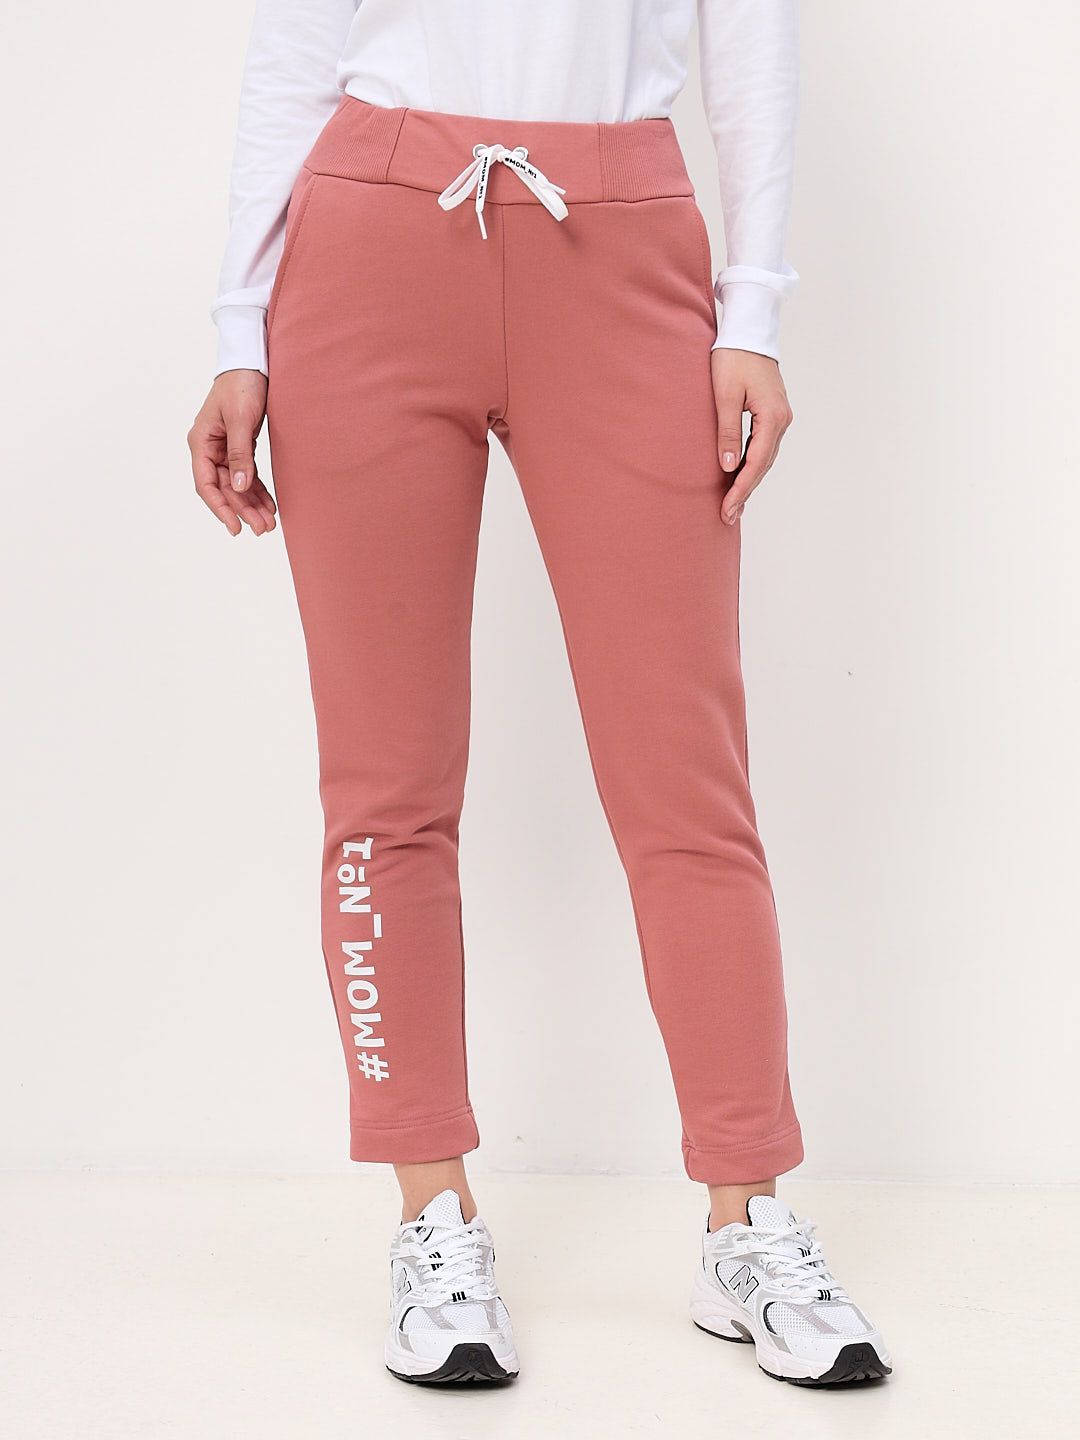 Спортивные брюки женские MOM №1 MOM-0136 розовые L